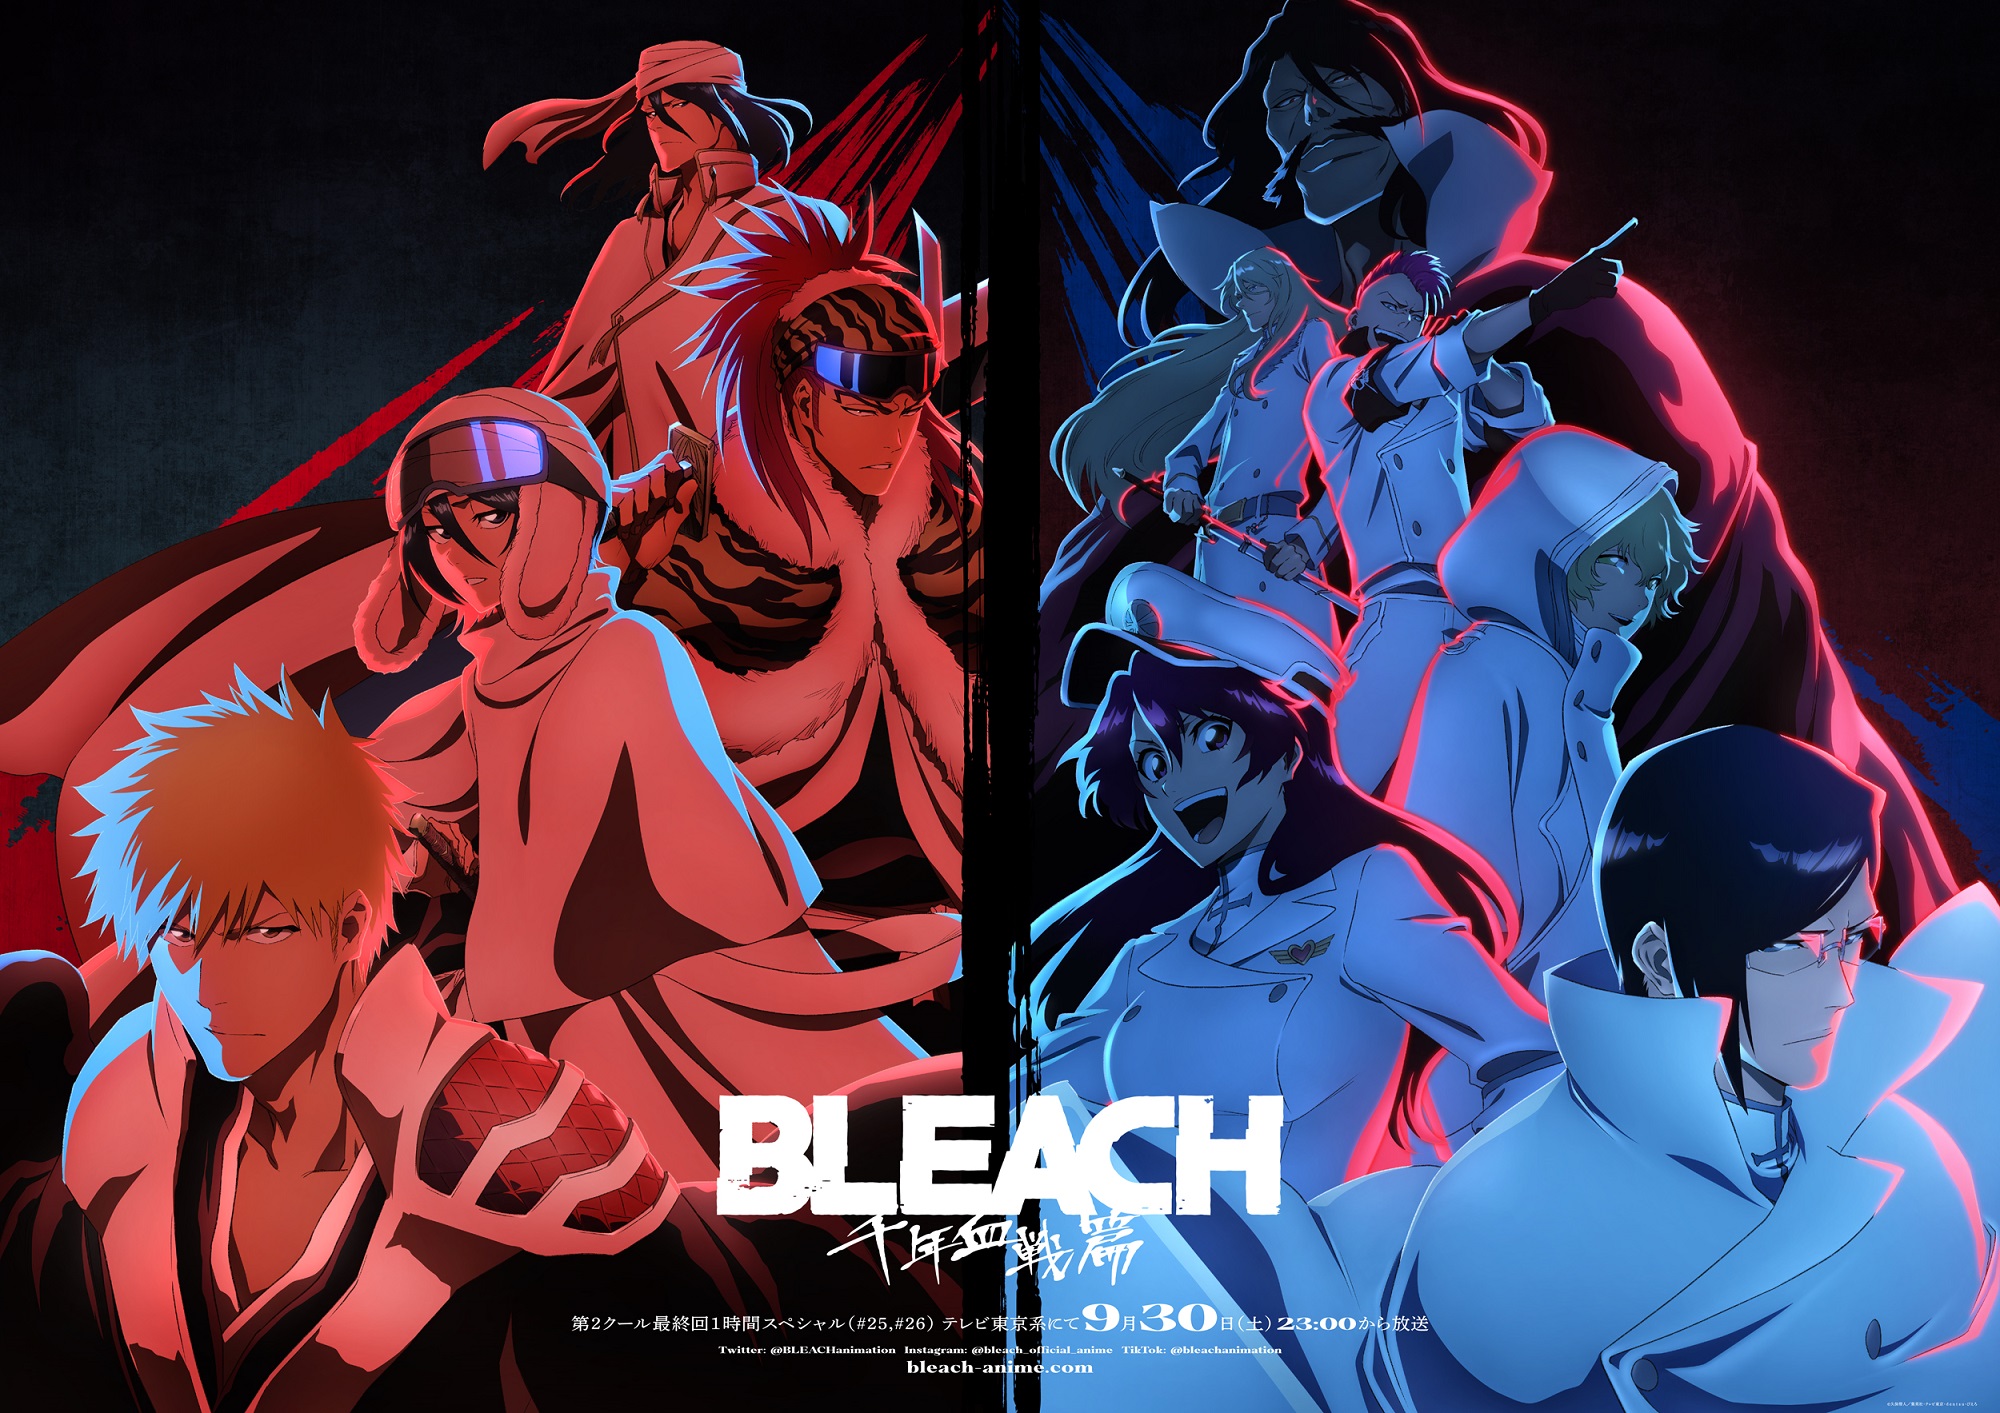 Bleach: Thousand-Year Blood War TV Anime Gets Short and Fun New Trailer -  Crunchyroll News